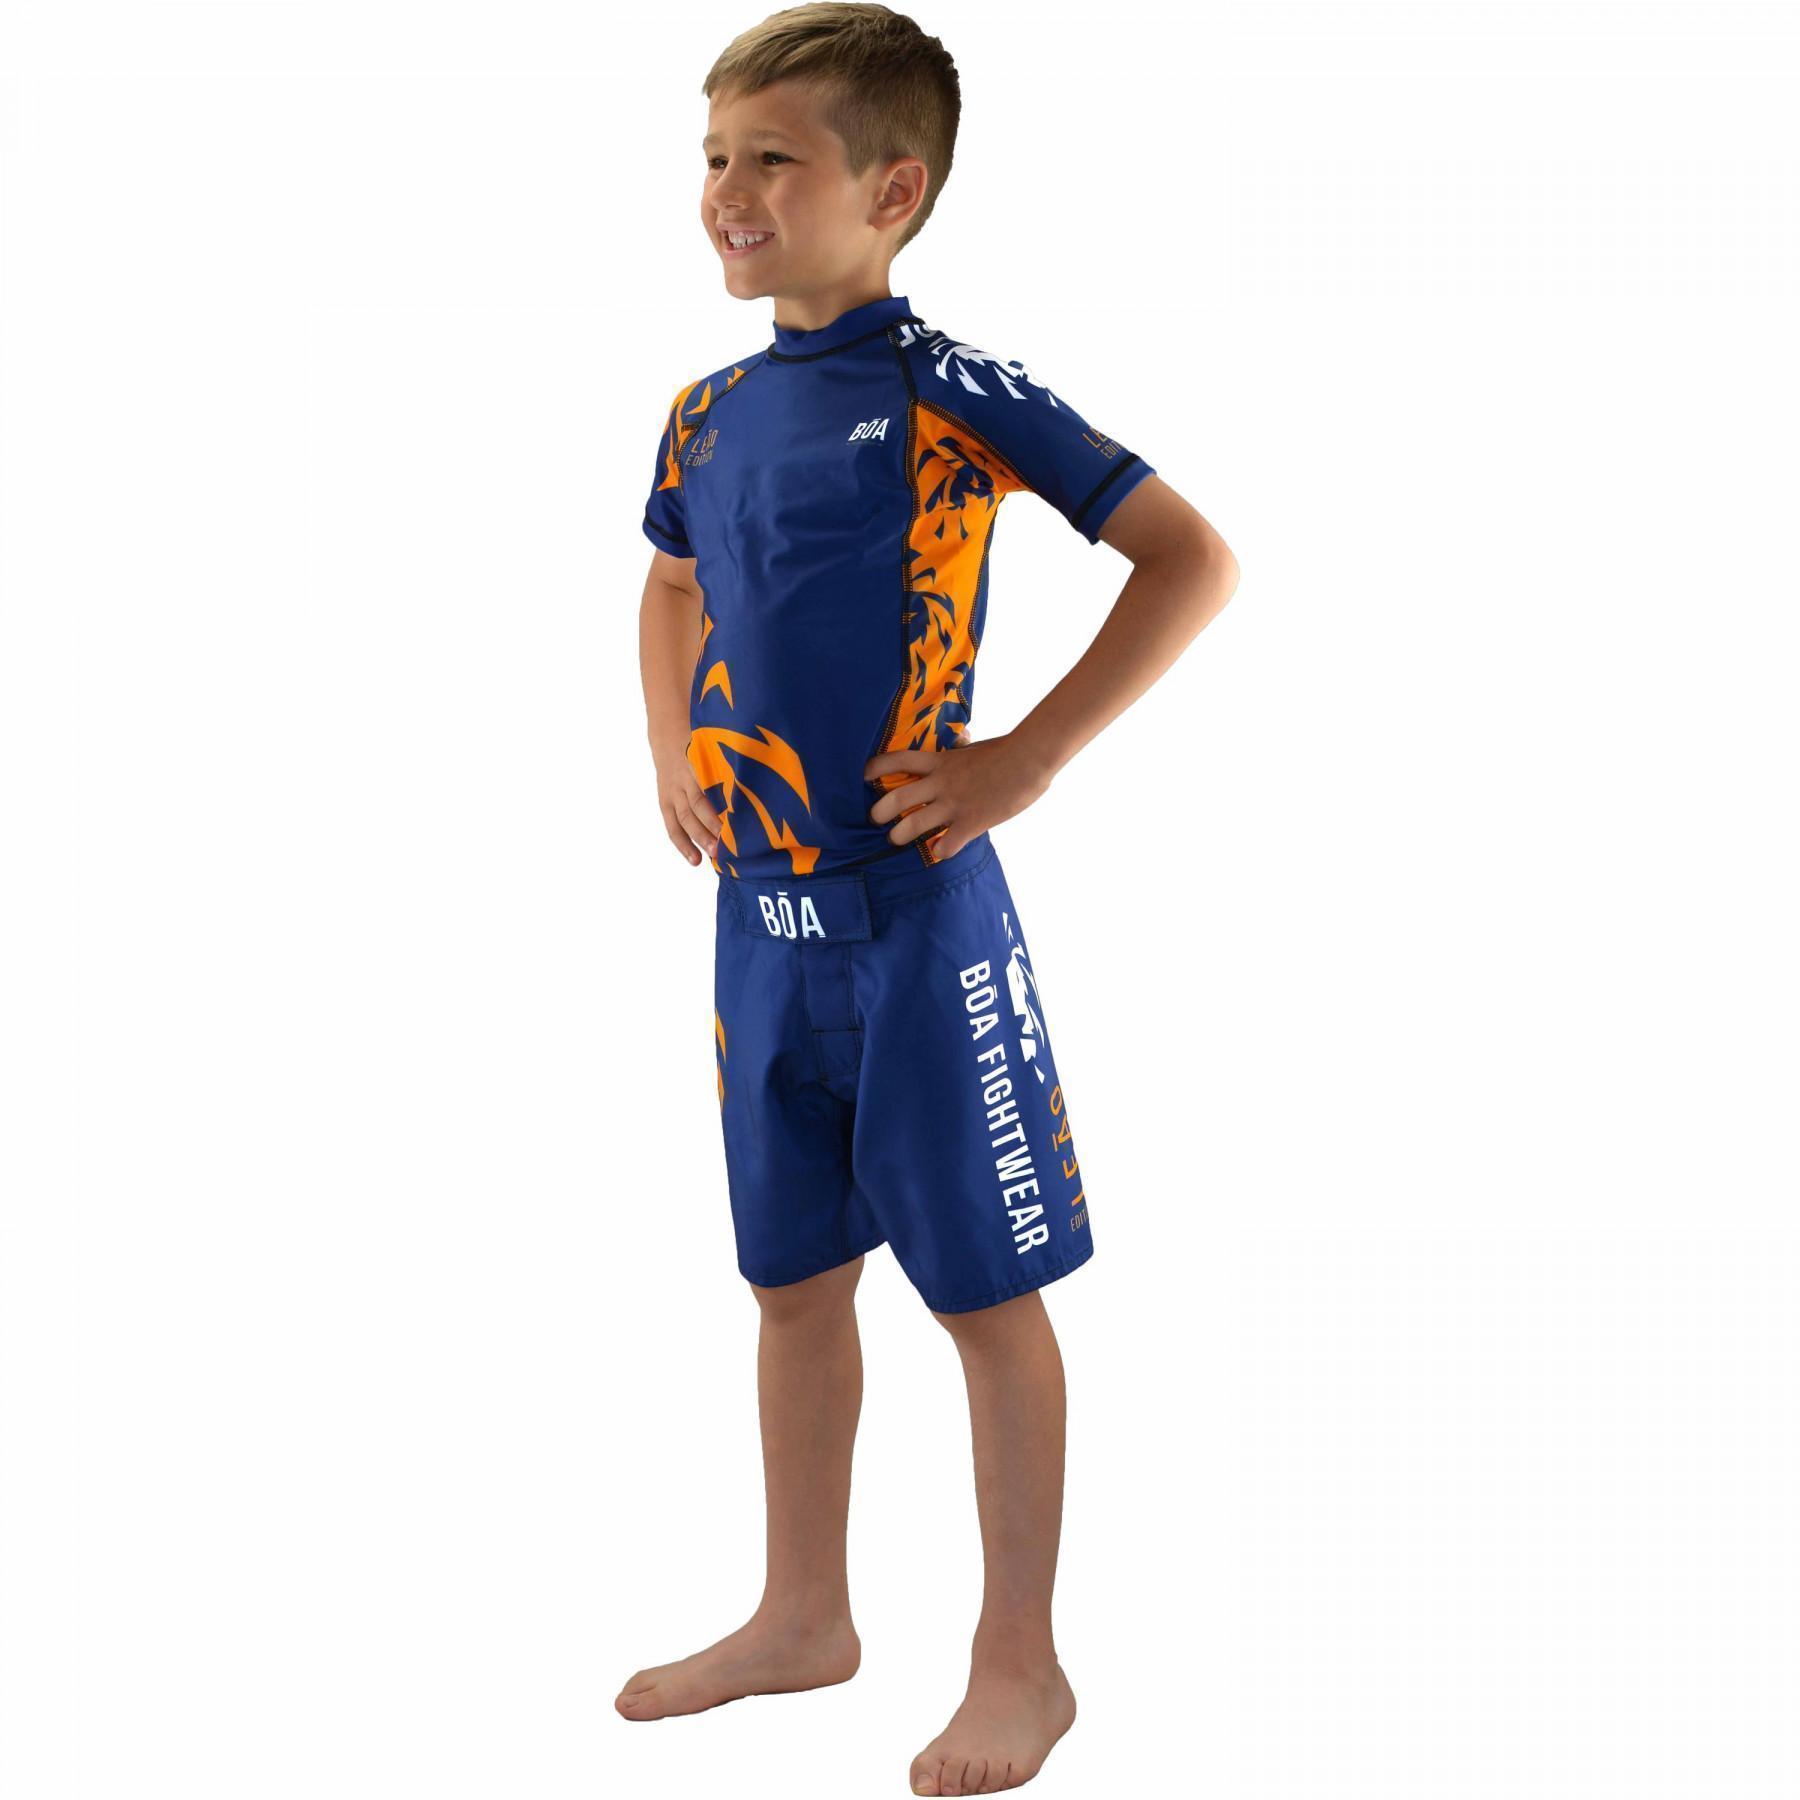 Short-sleeved rashguard for children Bõa Leao